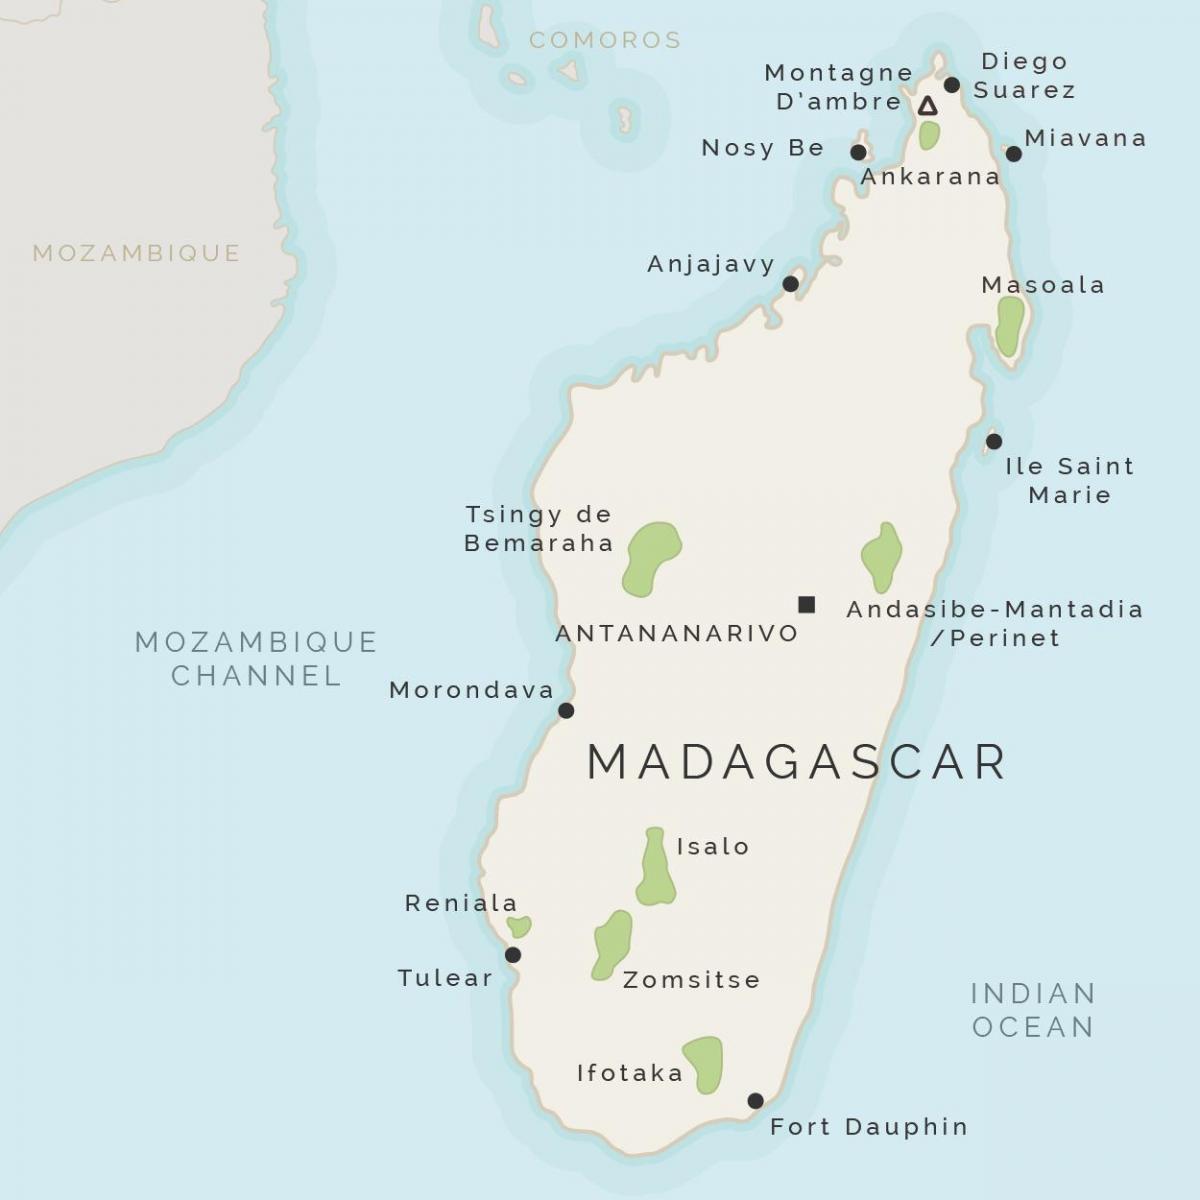 χάρτης της Μαδαγασκάρης και τα γύρω νησιά